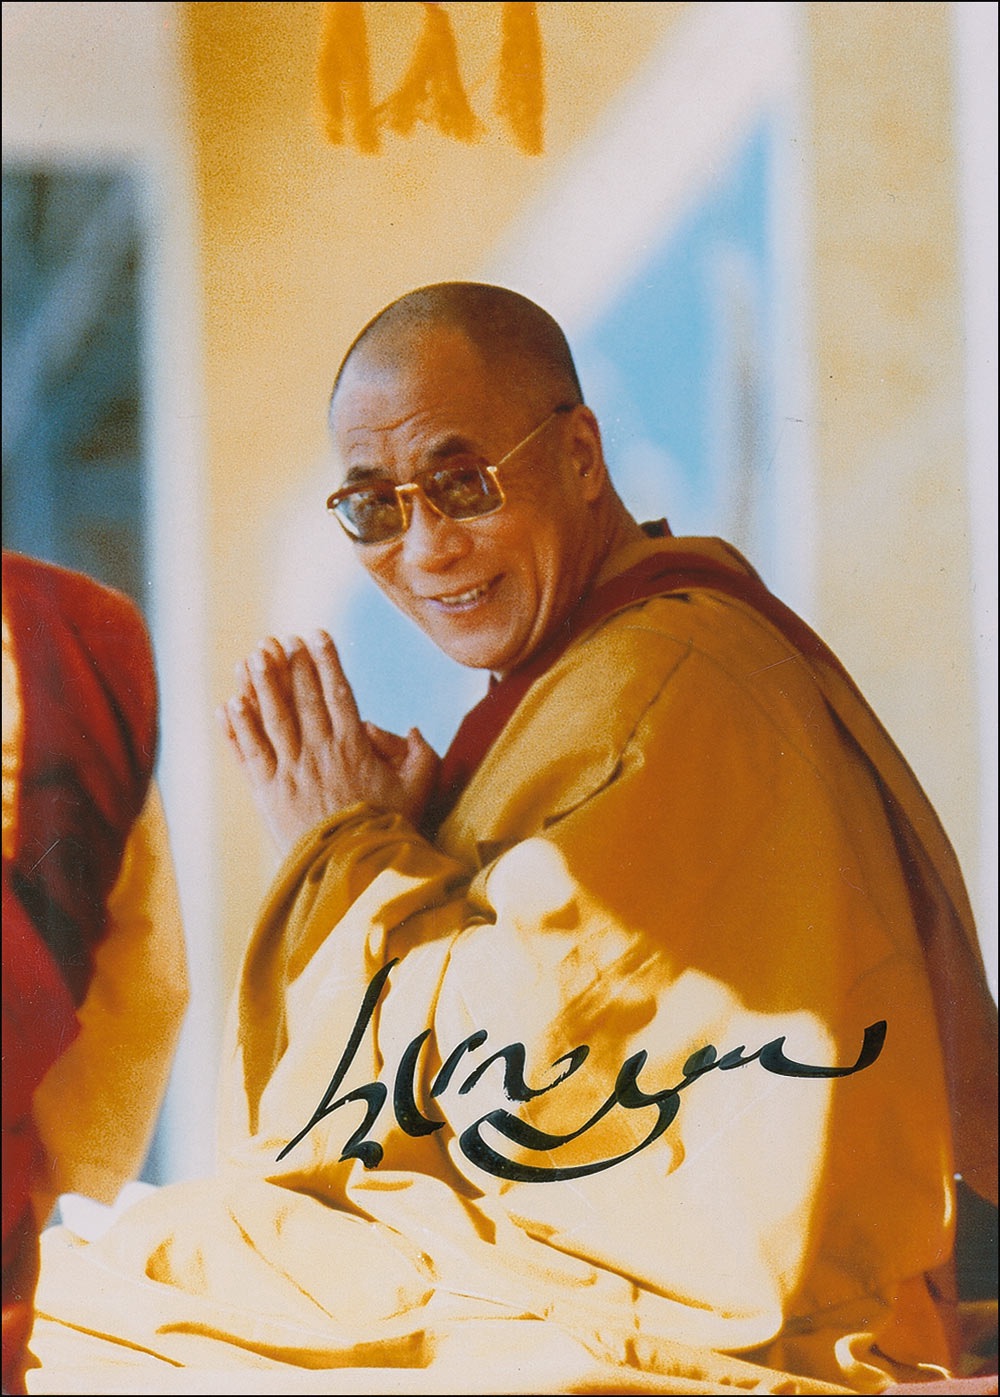 Lot #208 Dalai Lama